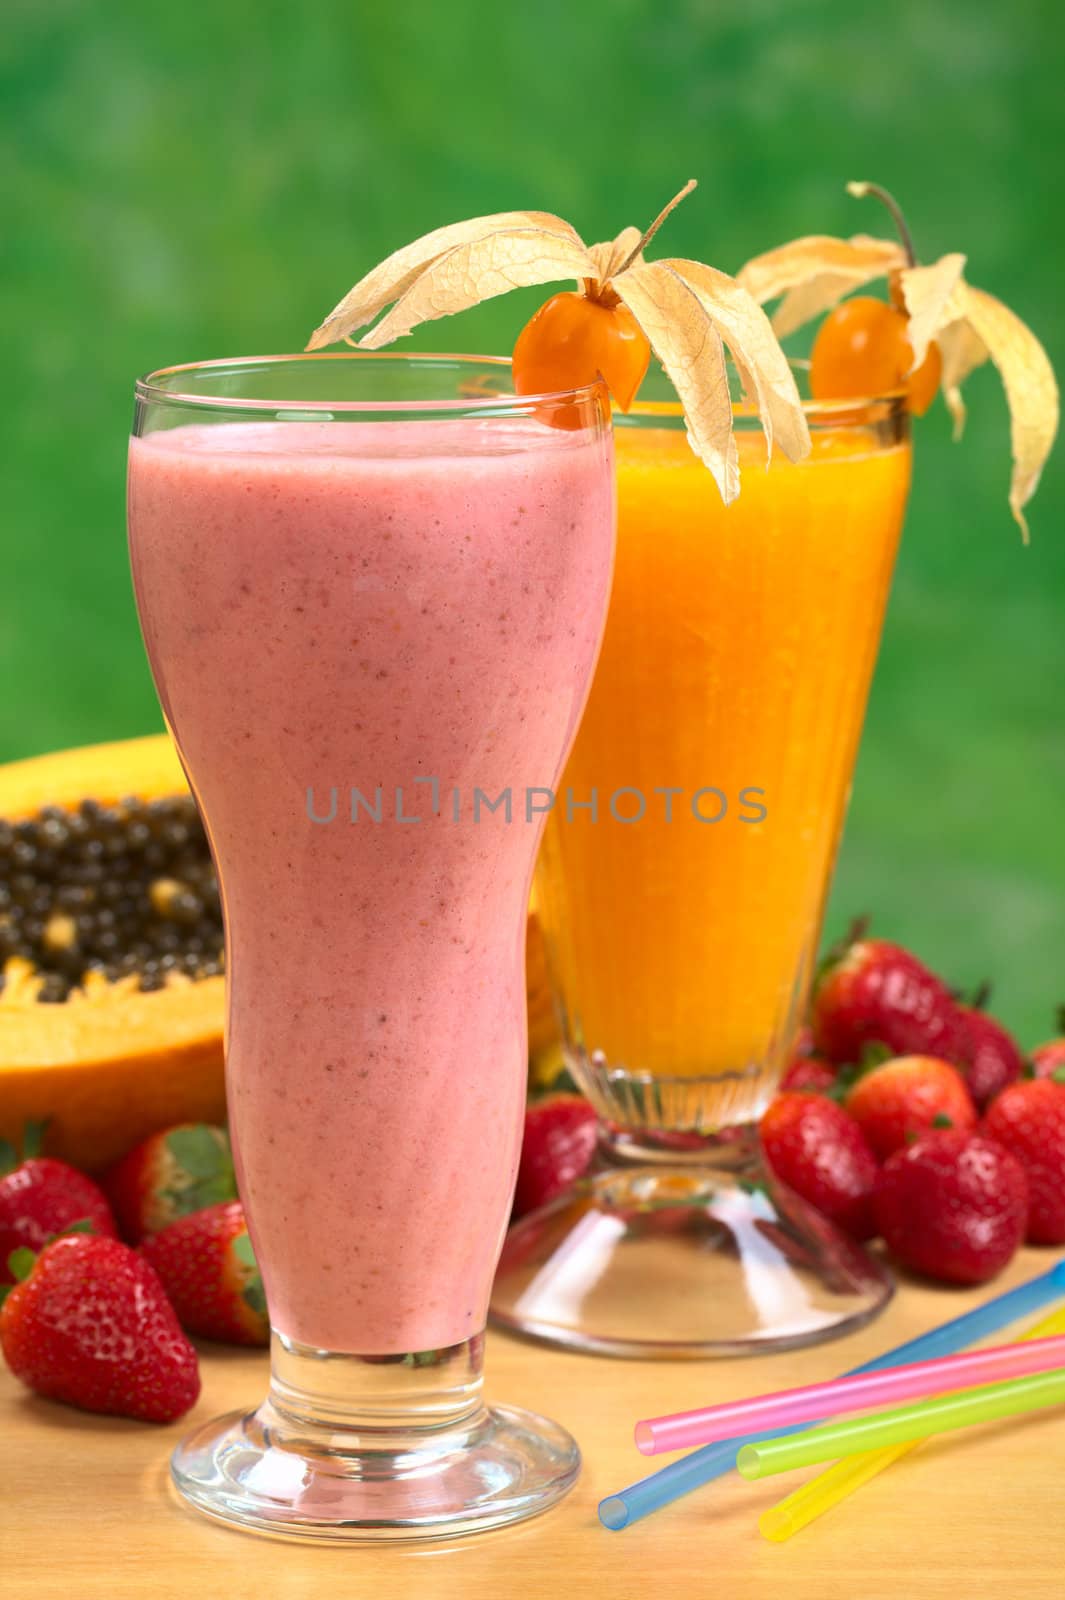 Strawberry Milkshake and Papaya Juice by ildi